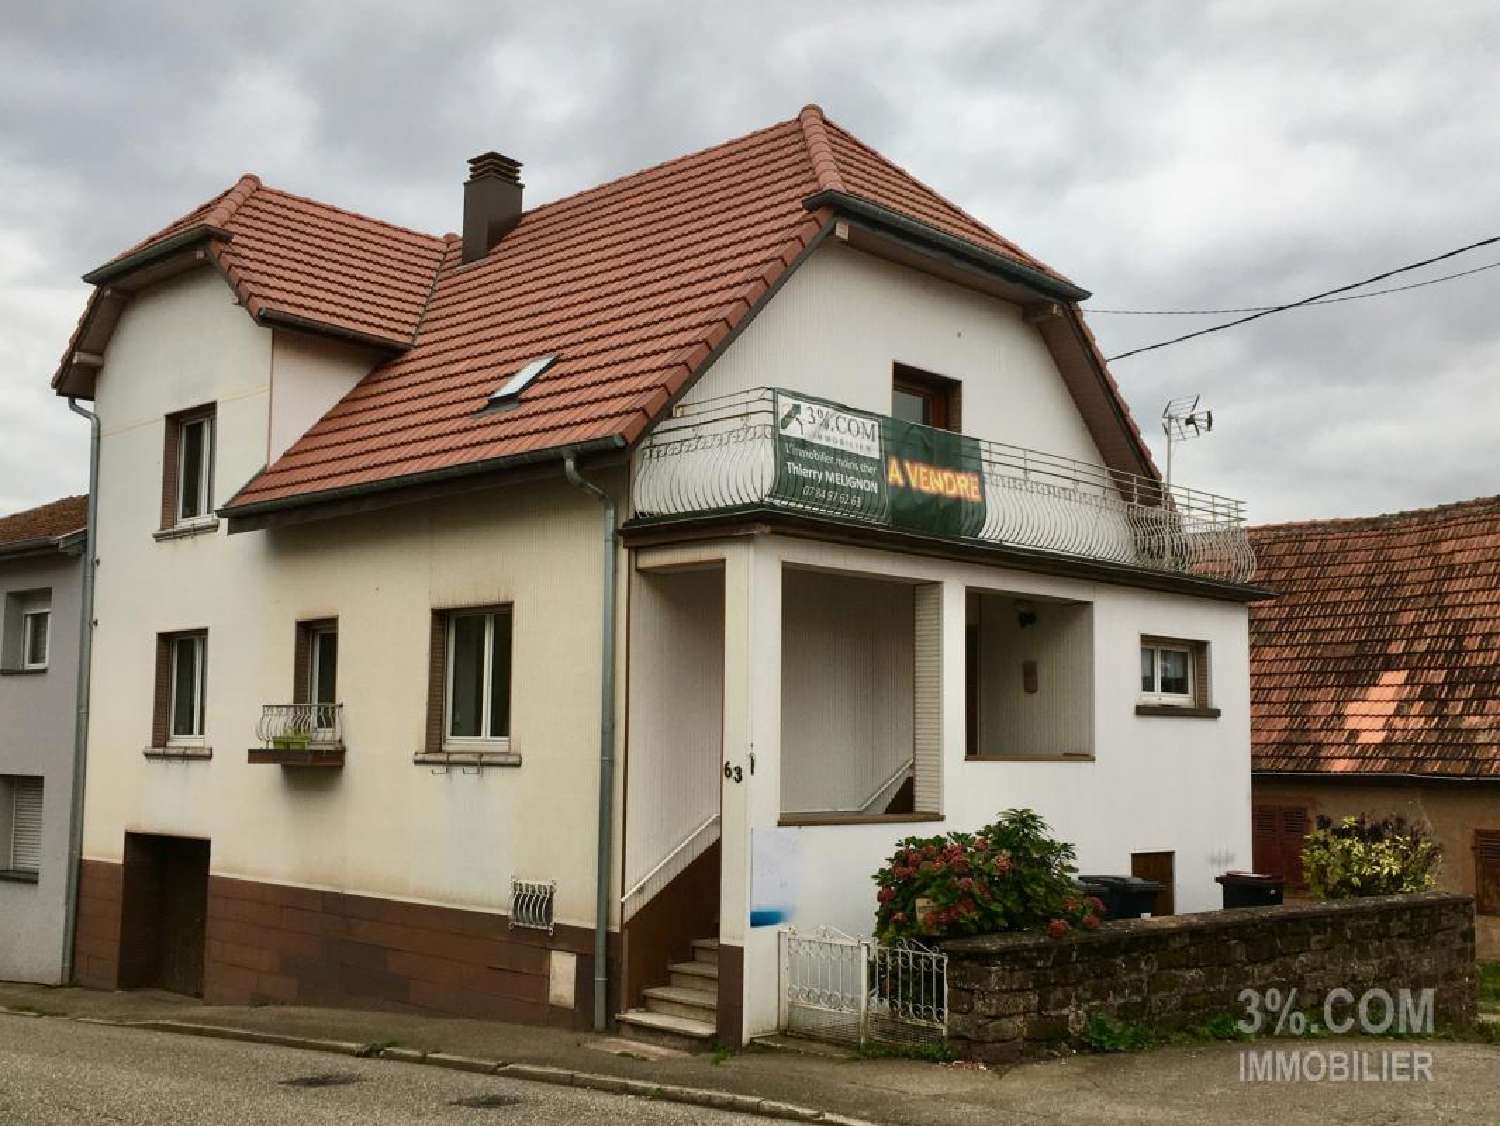  à vendre maison Lemberg Moselle 2